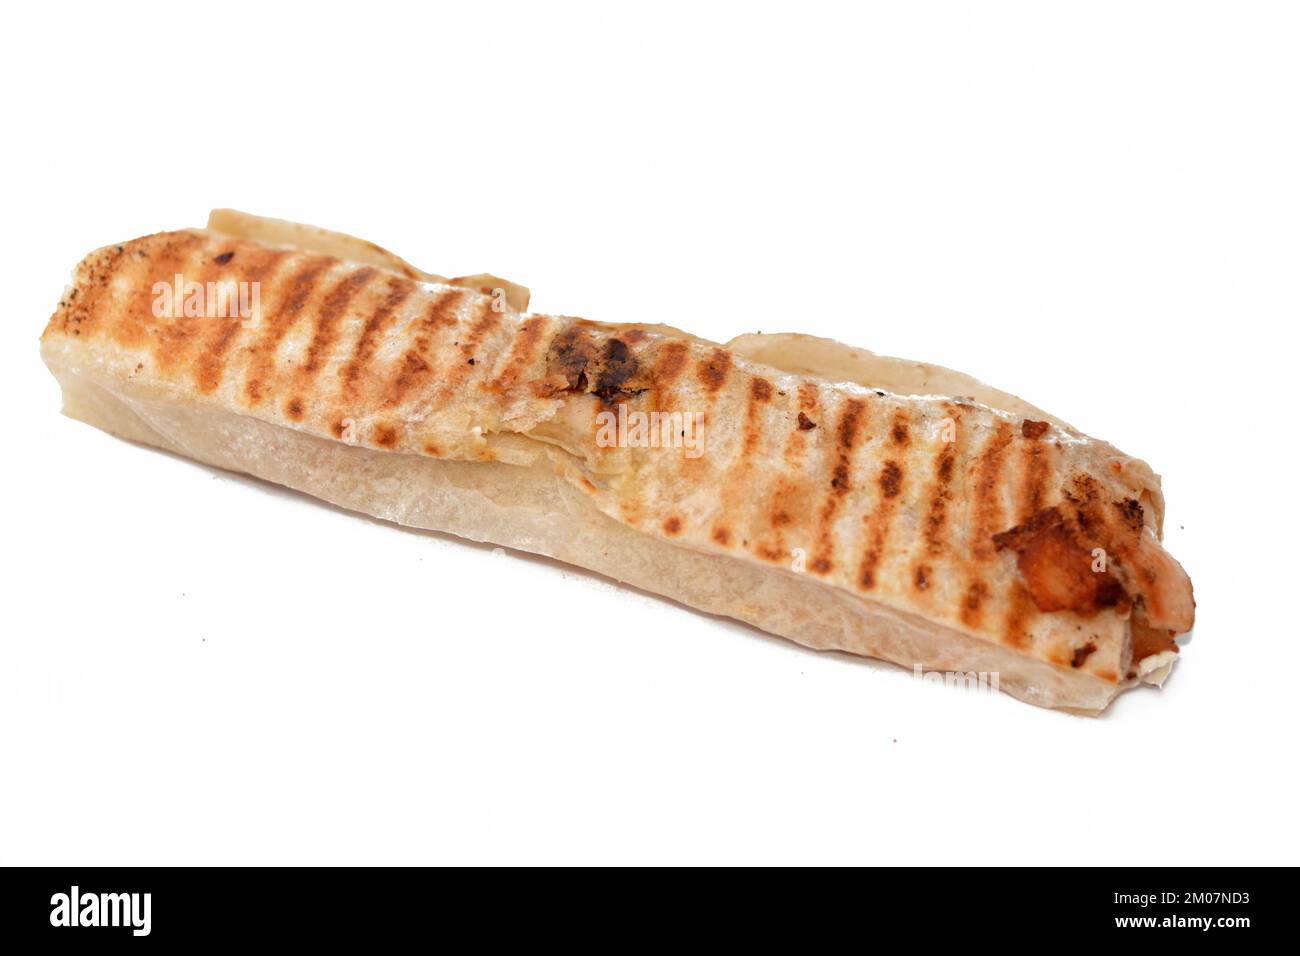 Syrisches Rezept Küche Hintergrund, Huhn Shawerma oder Shawarma Tortilla Wrap mit Zwiebeln, Tomaten, Salat und Knoblauchsauce in syrischem Brot isoliert auf Stockfoto